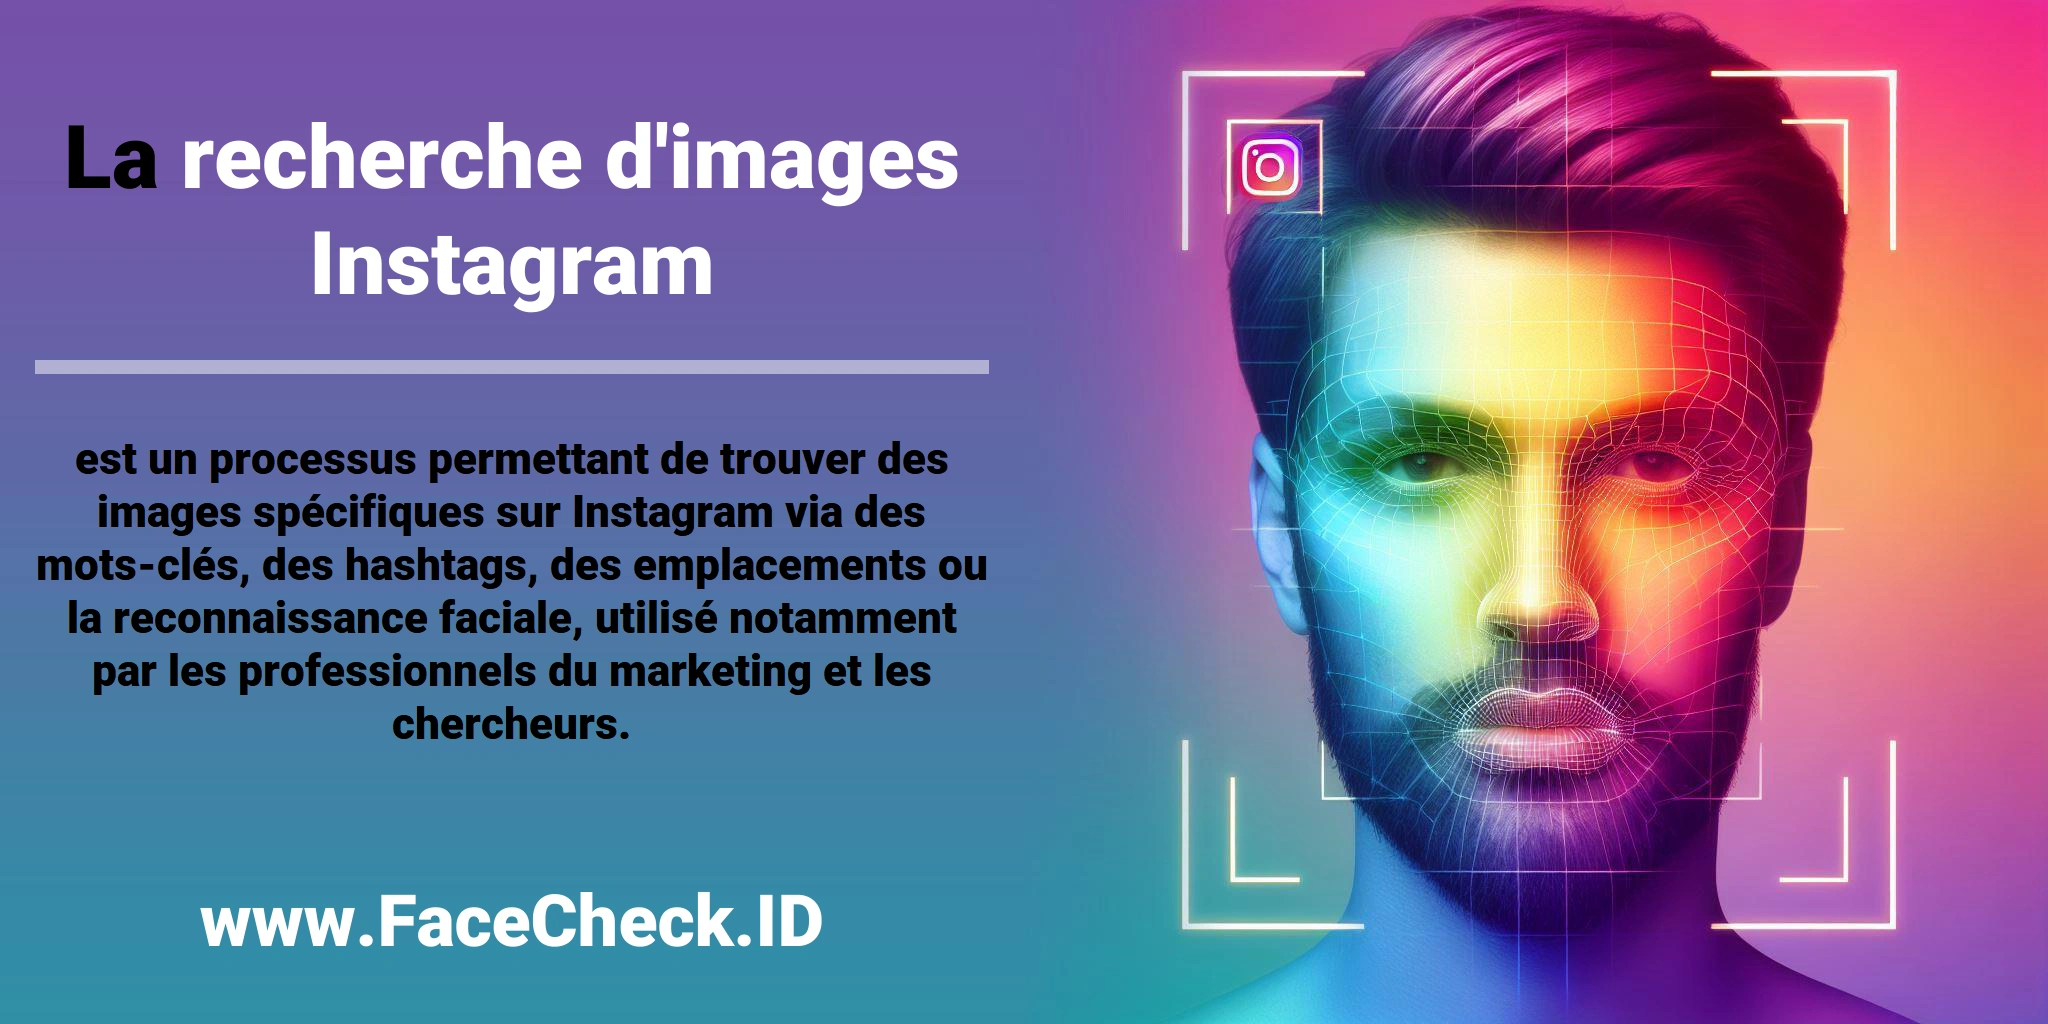 La <b>recherche d'images Instagram</b> est un processus permettant de trouver des images spécifiques sur Instagram via des mots-clés, des hashtags, des emplacements ou la reconnaissance faciale, utilisé notamment par les professionnels du marketing et les chercheurs.